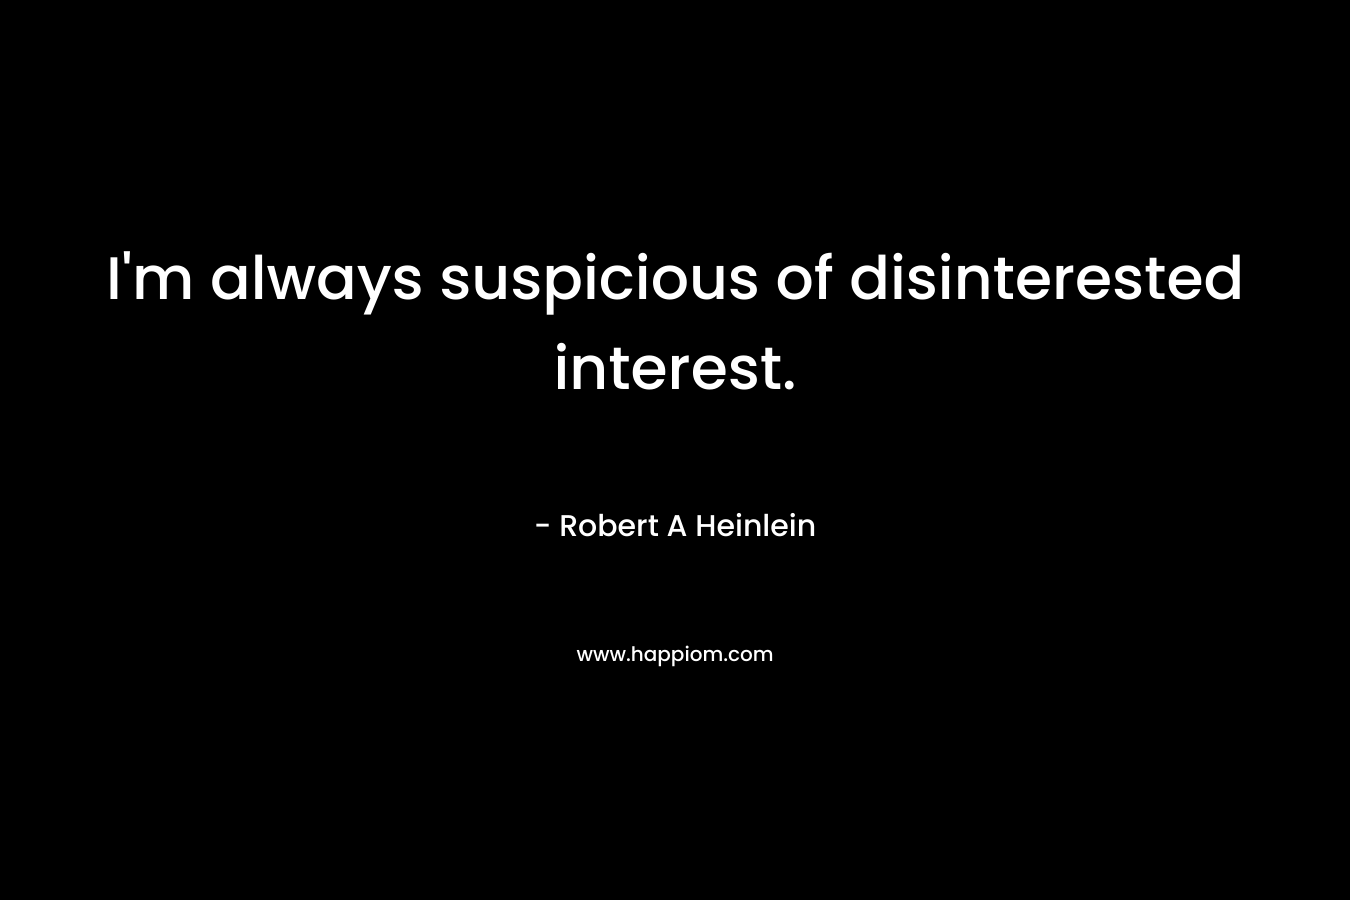 I'm always suspicious of disinterested interest.